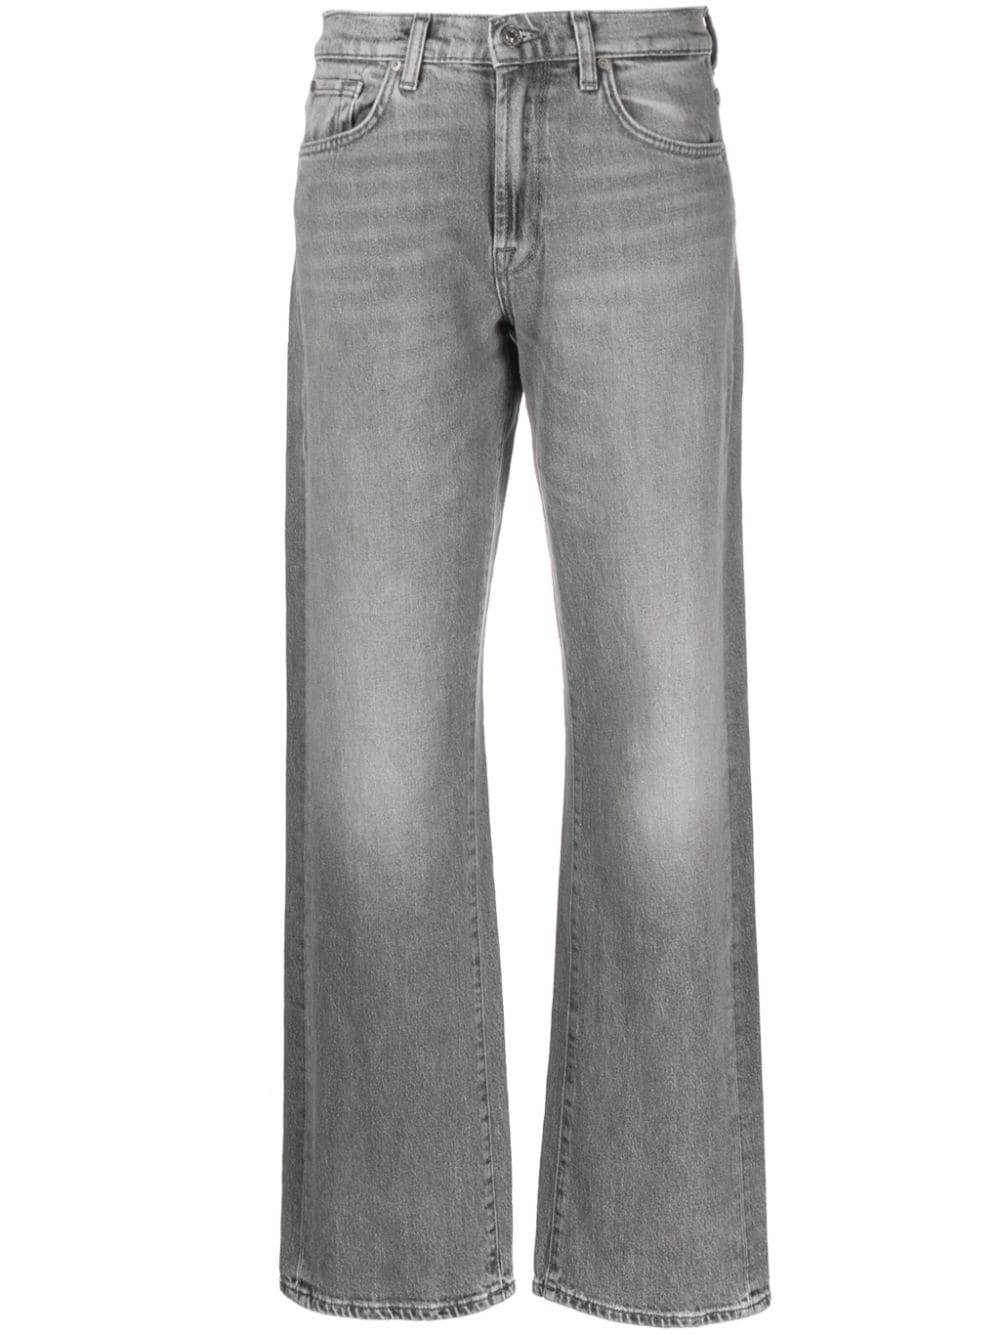  Τα 5 must-have γκρι jeans για να προσθέσεις στην χειμερινή γκαρνταρόμπα σου